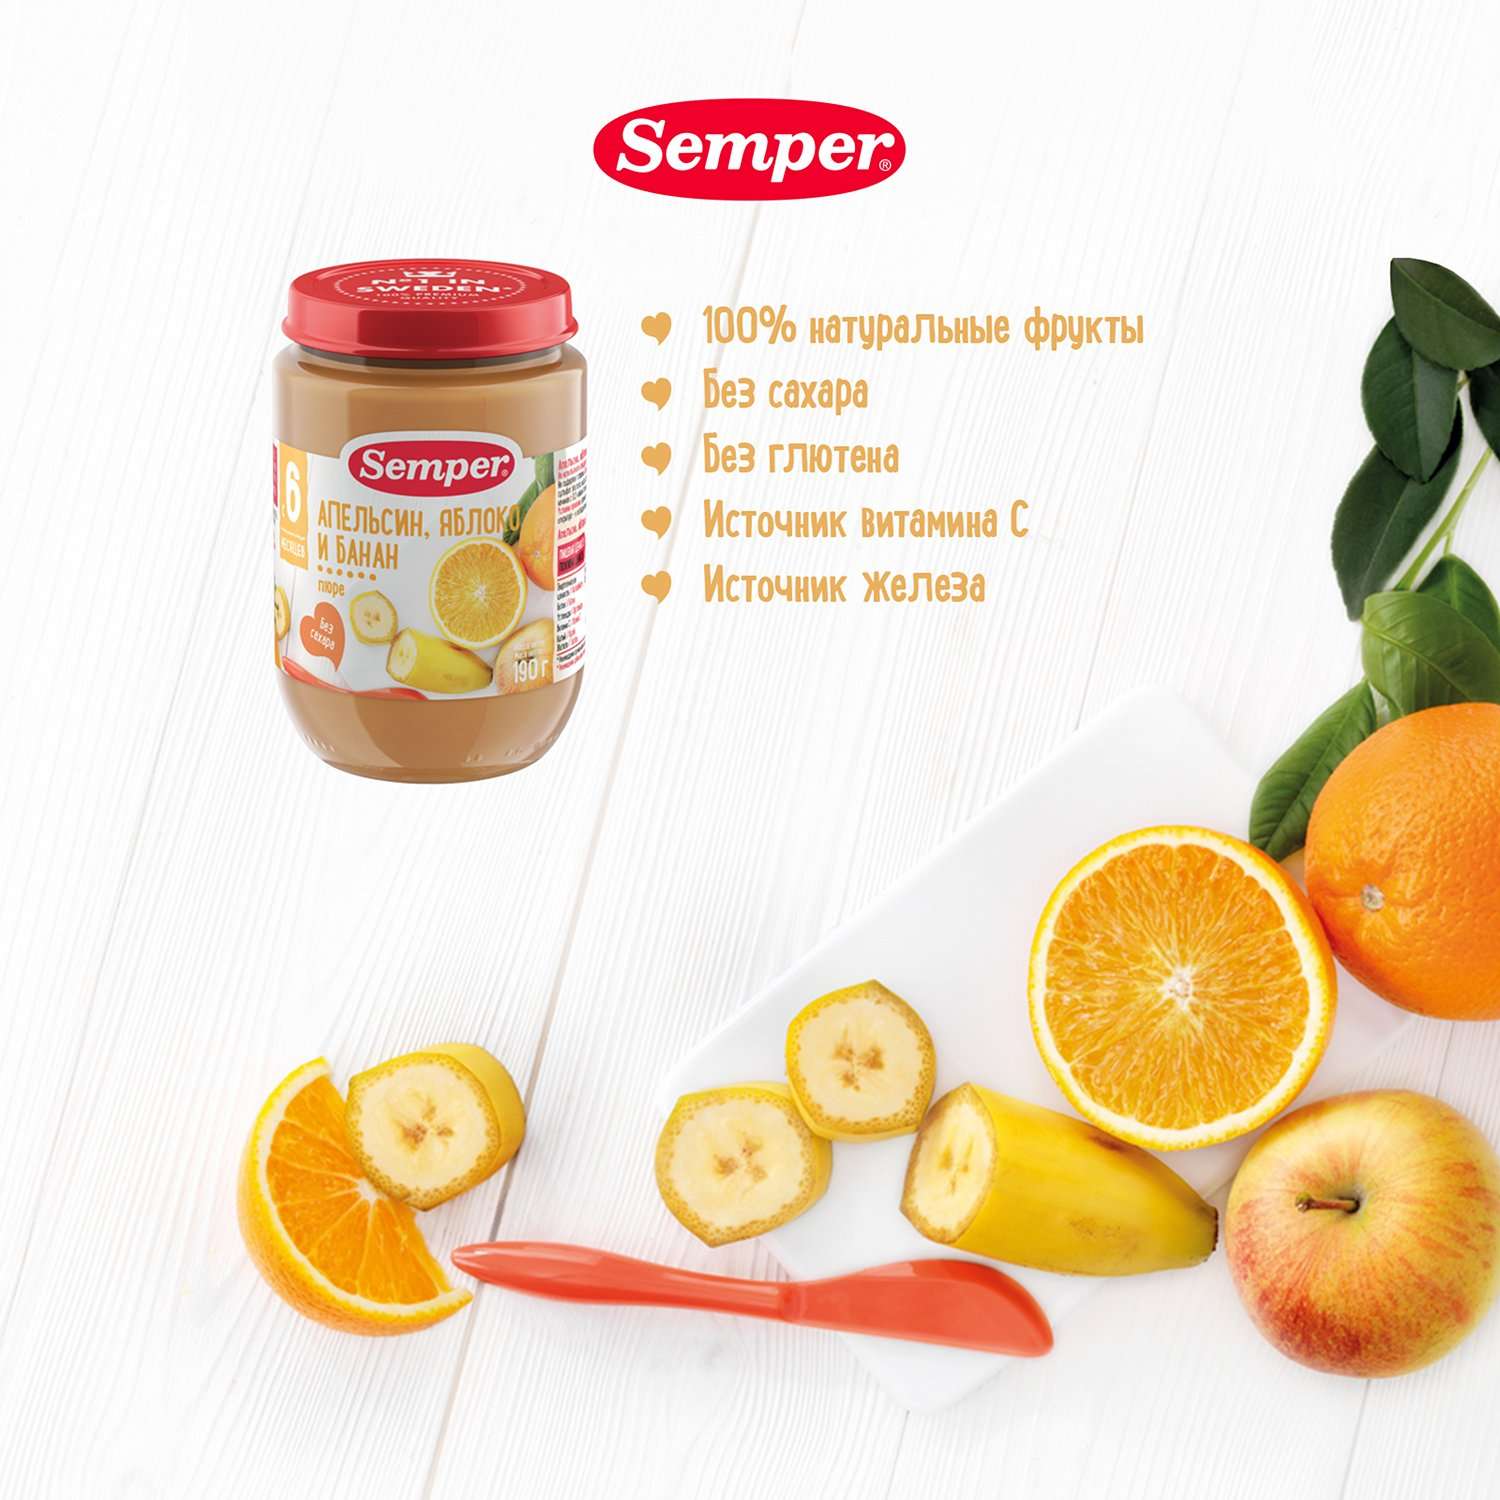 Пюре Semper апельсин-яблоко-банан 190г с 6месяцев - фото 2